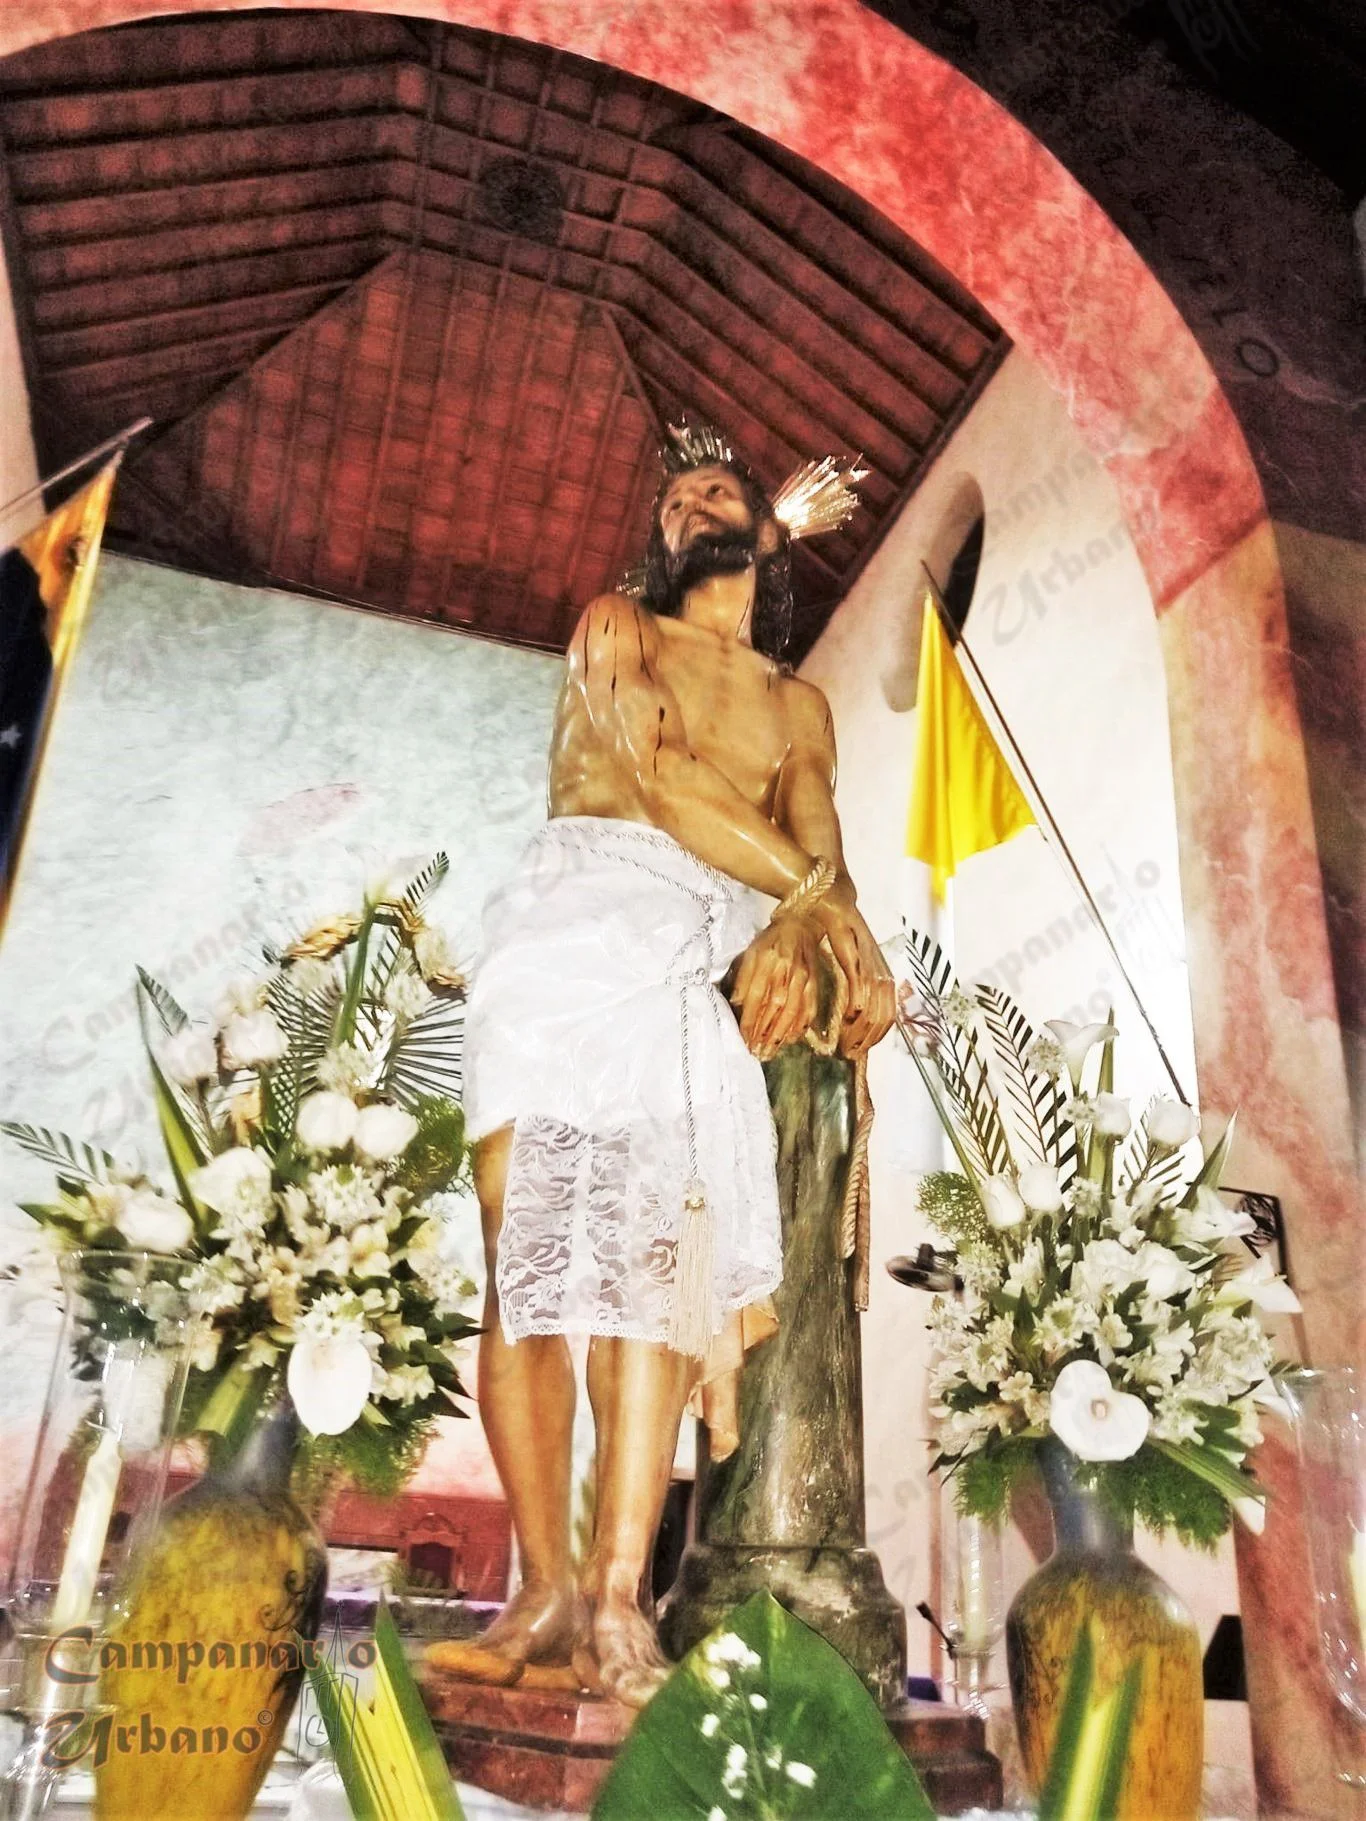 Imagen de Jesús Atado a la Columna, Catedral Nuestra Señora de Copacabana de Guarenas, durante su preparación la noche del domingo 10 de abril de 2022. Fotografía cortesía de la Sociedad Jesús Atado a la Columna.